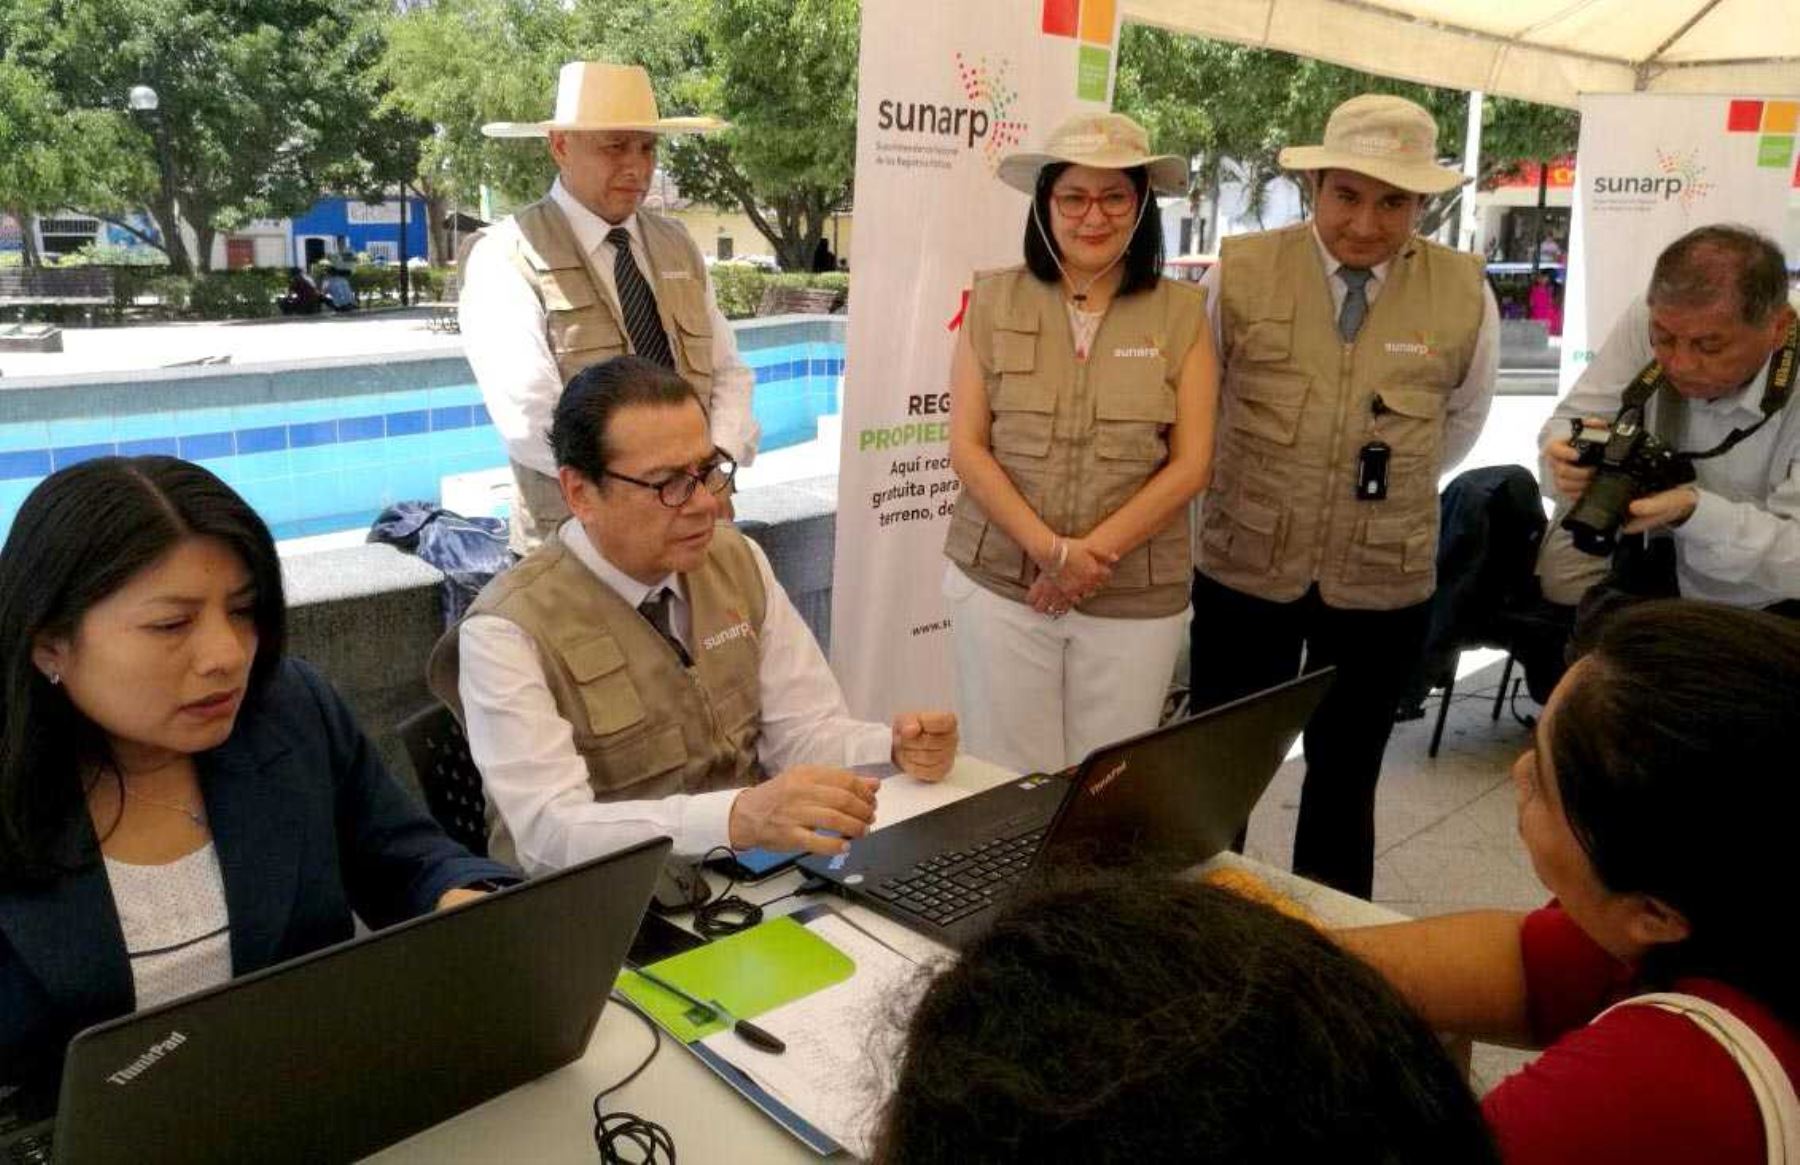 El ministro de Justicia y Derechos Humanos, Enrique Mendoza Ramírez, inauguró hoy la nueva Oficina Receptora de la Sunarp en el distrito de Tambogrande, en la región Piura.